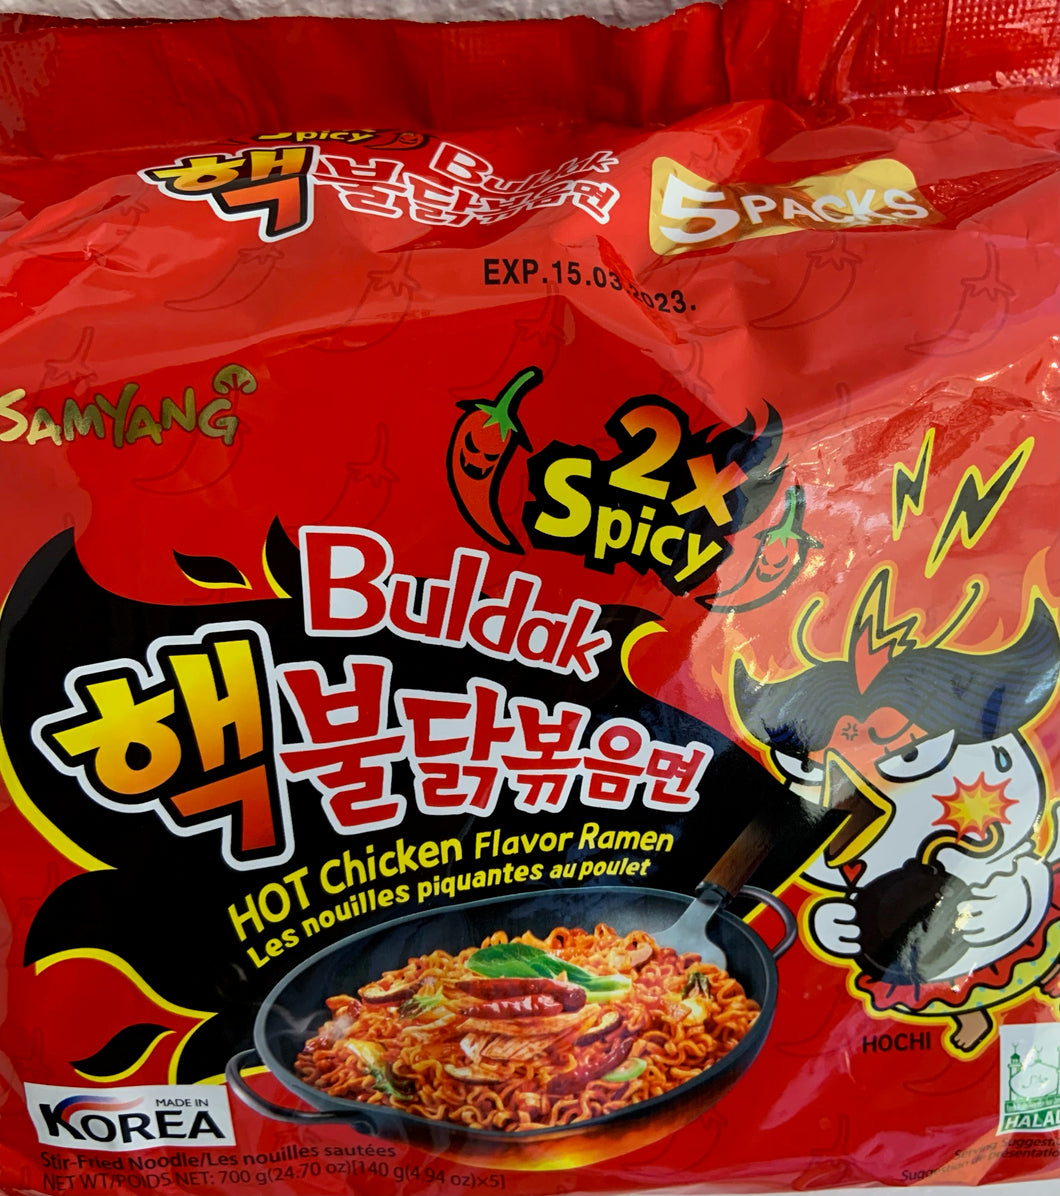 Samyang instant nudler, 2x spicy, 5 portion/pk